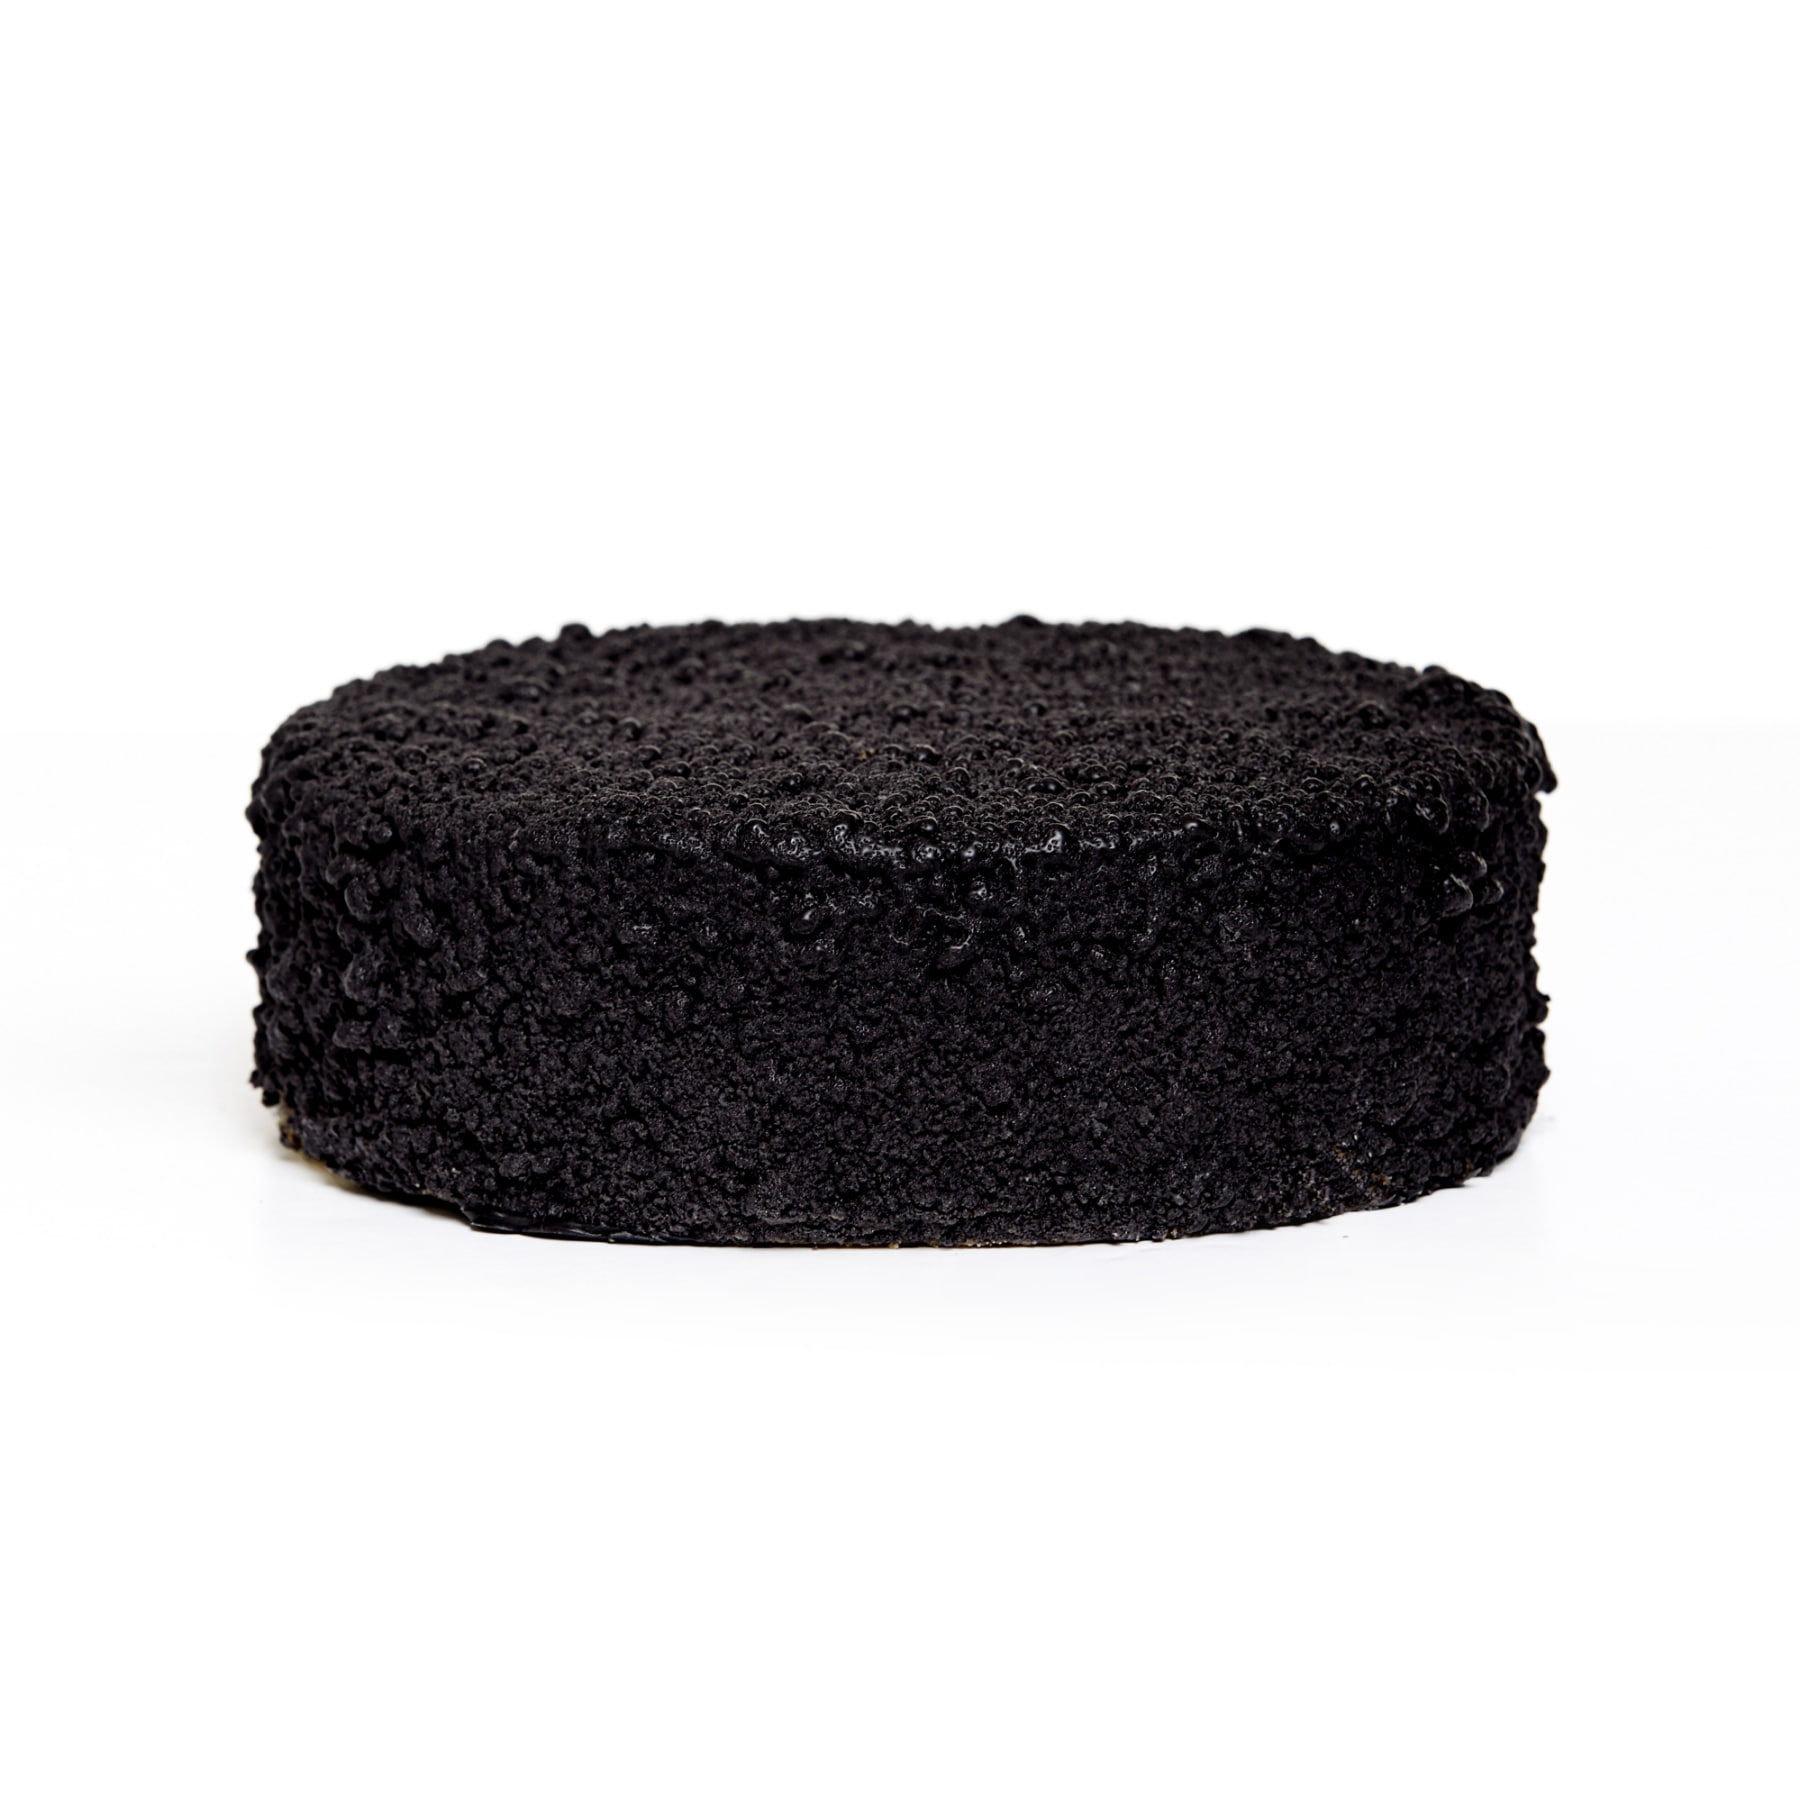 [카카오톡 선물하기] SIGNATURE CAKE : BLACK